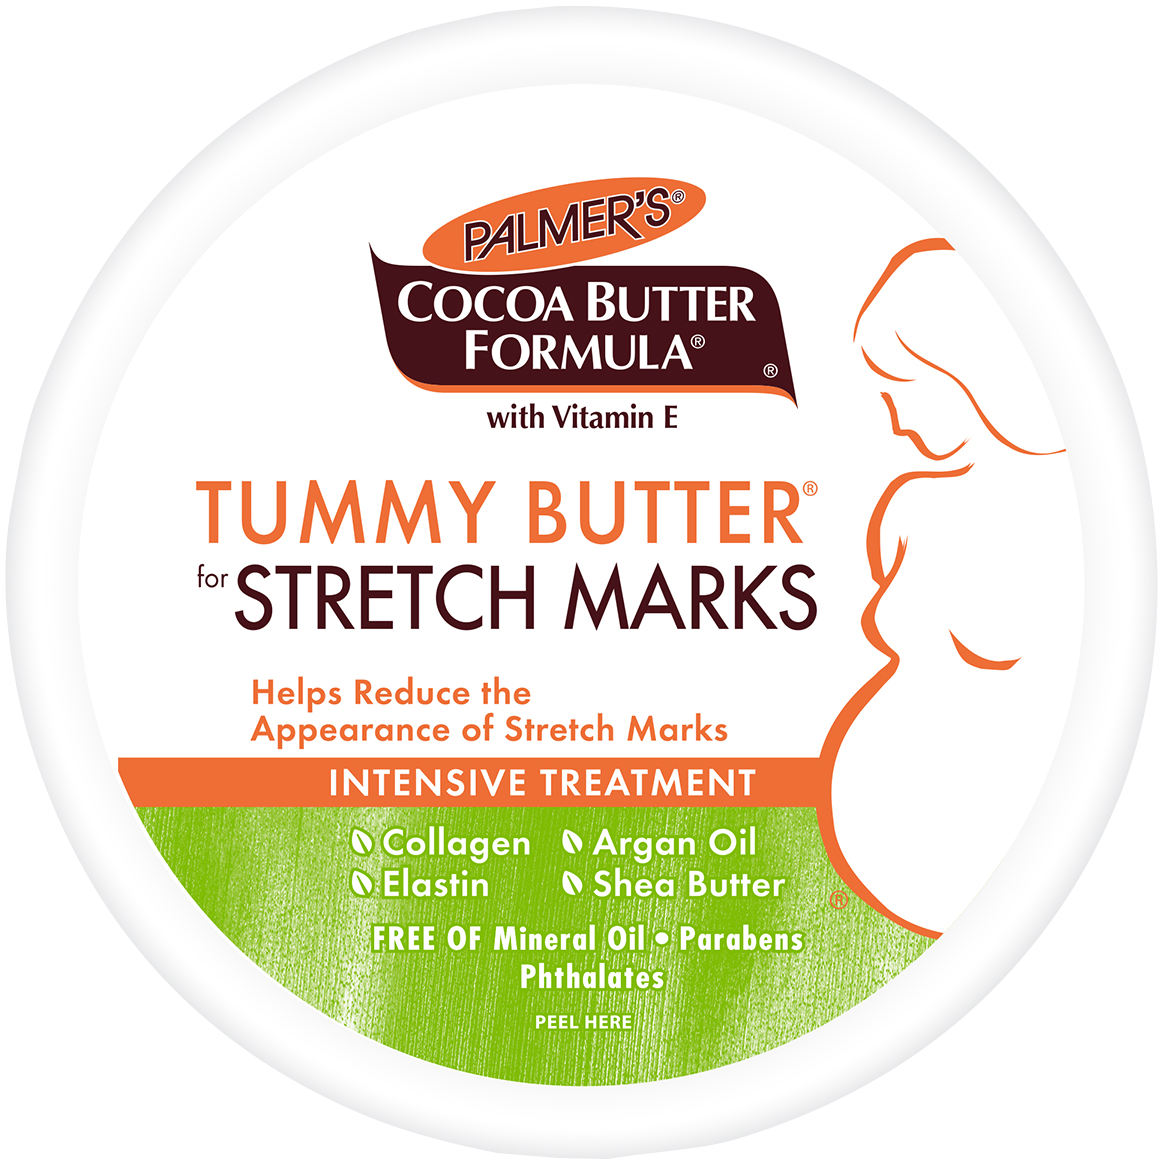 Palmer's Cocoa Butter Formula масло для тела против растяжек, 125 г palmer s cocoa butter formula масло для тела 200 г 7 25 унций